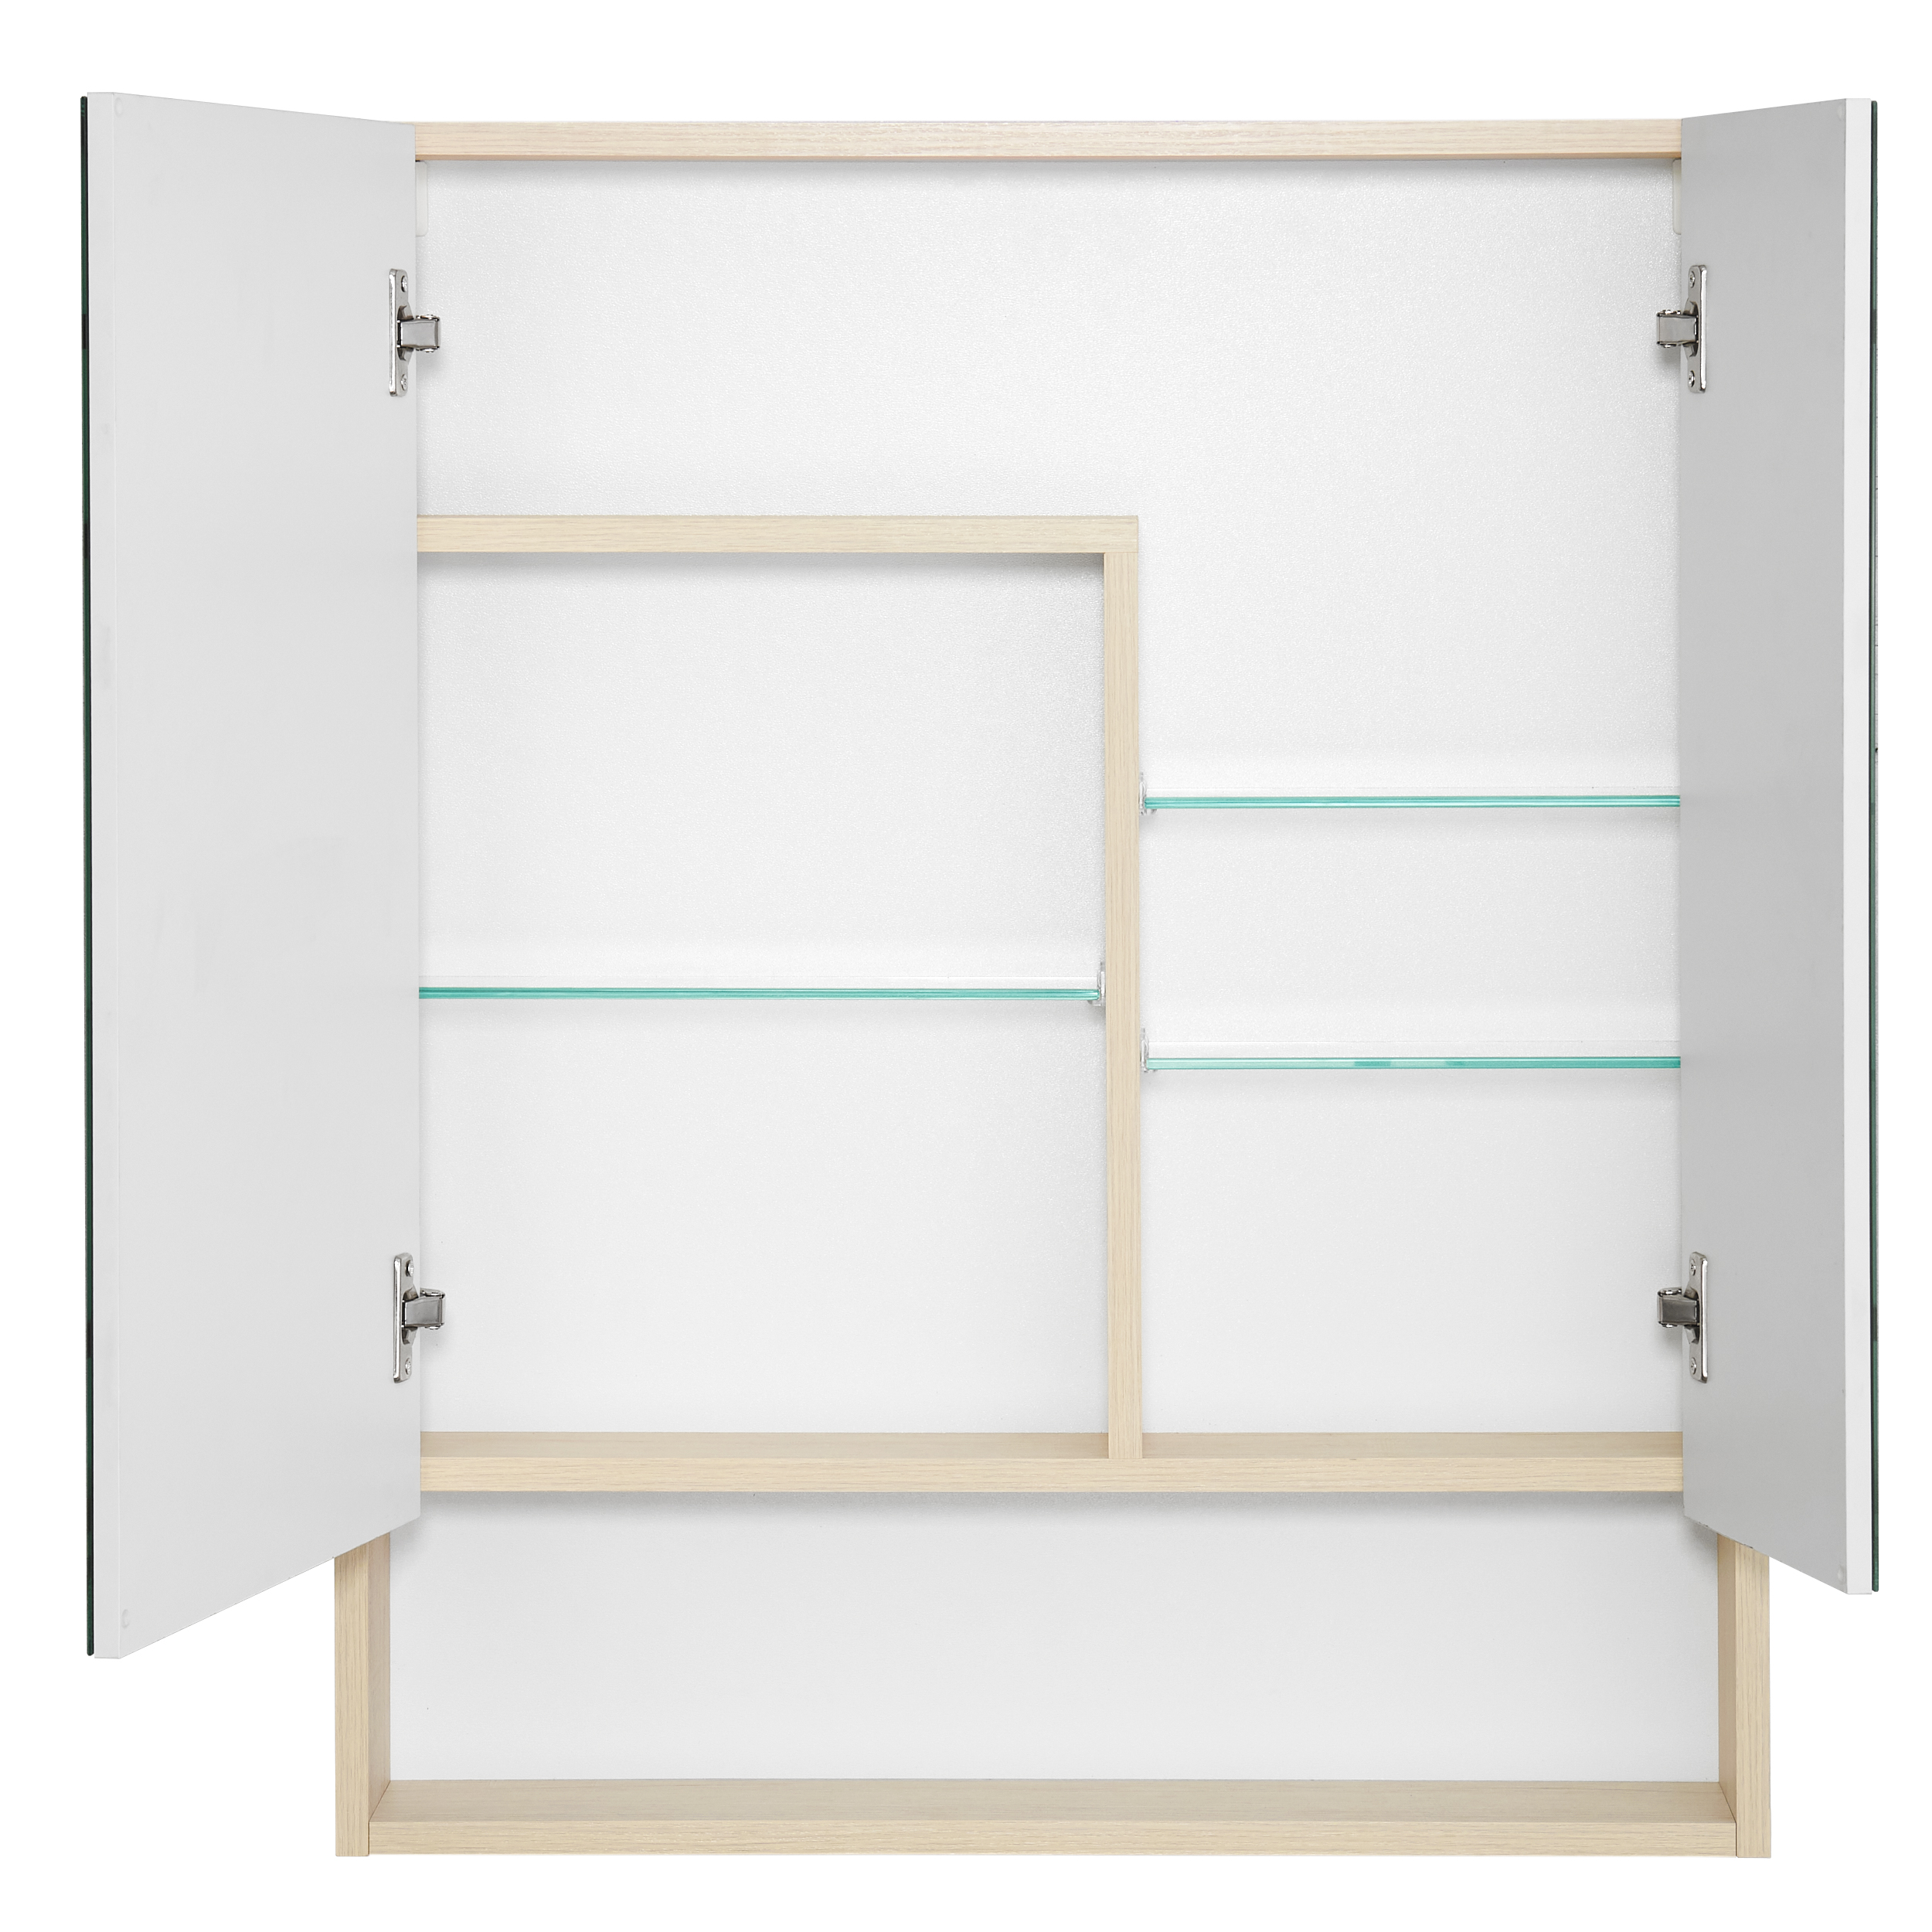 Зеркальный шкаф Акватон Сканди 1A252202SDB20 70 см, белый - фото 2